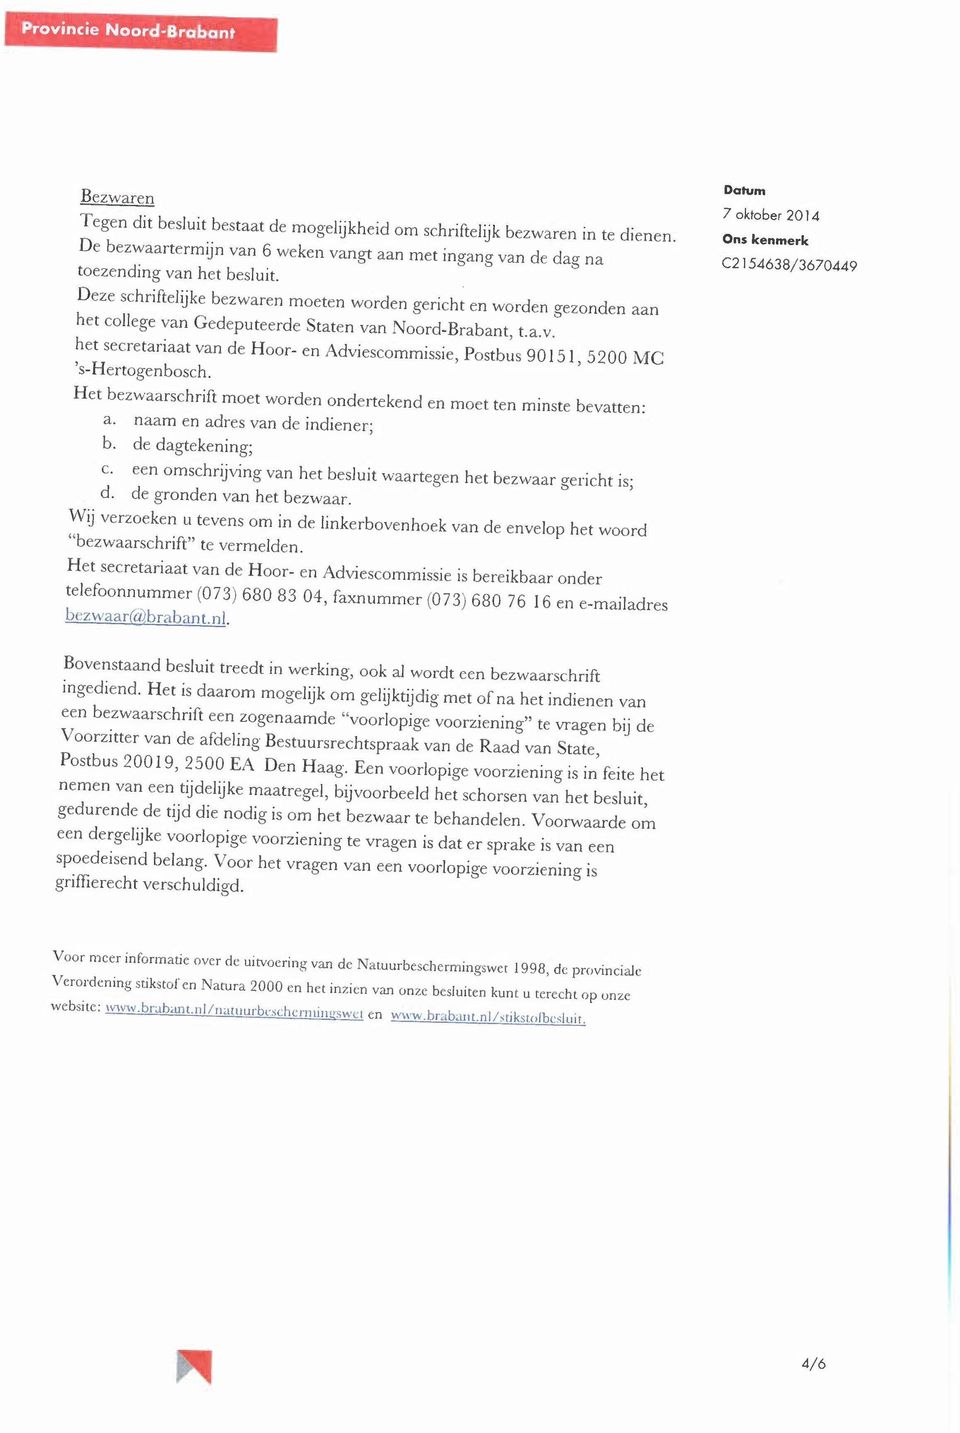 Deze schriftelijke bezwaren moeten worden gericht en worden gezonden aan het college van Gedeputeerde Staten van Noord-Brabant, t.a.v. het secretariaat van de Hoor- en Adviescommissie, Postbus 90151, 5200 MC 's-hertogenbosch.